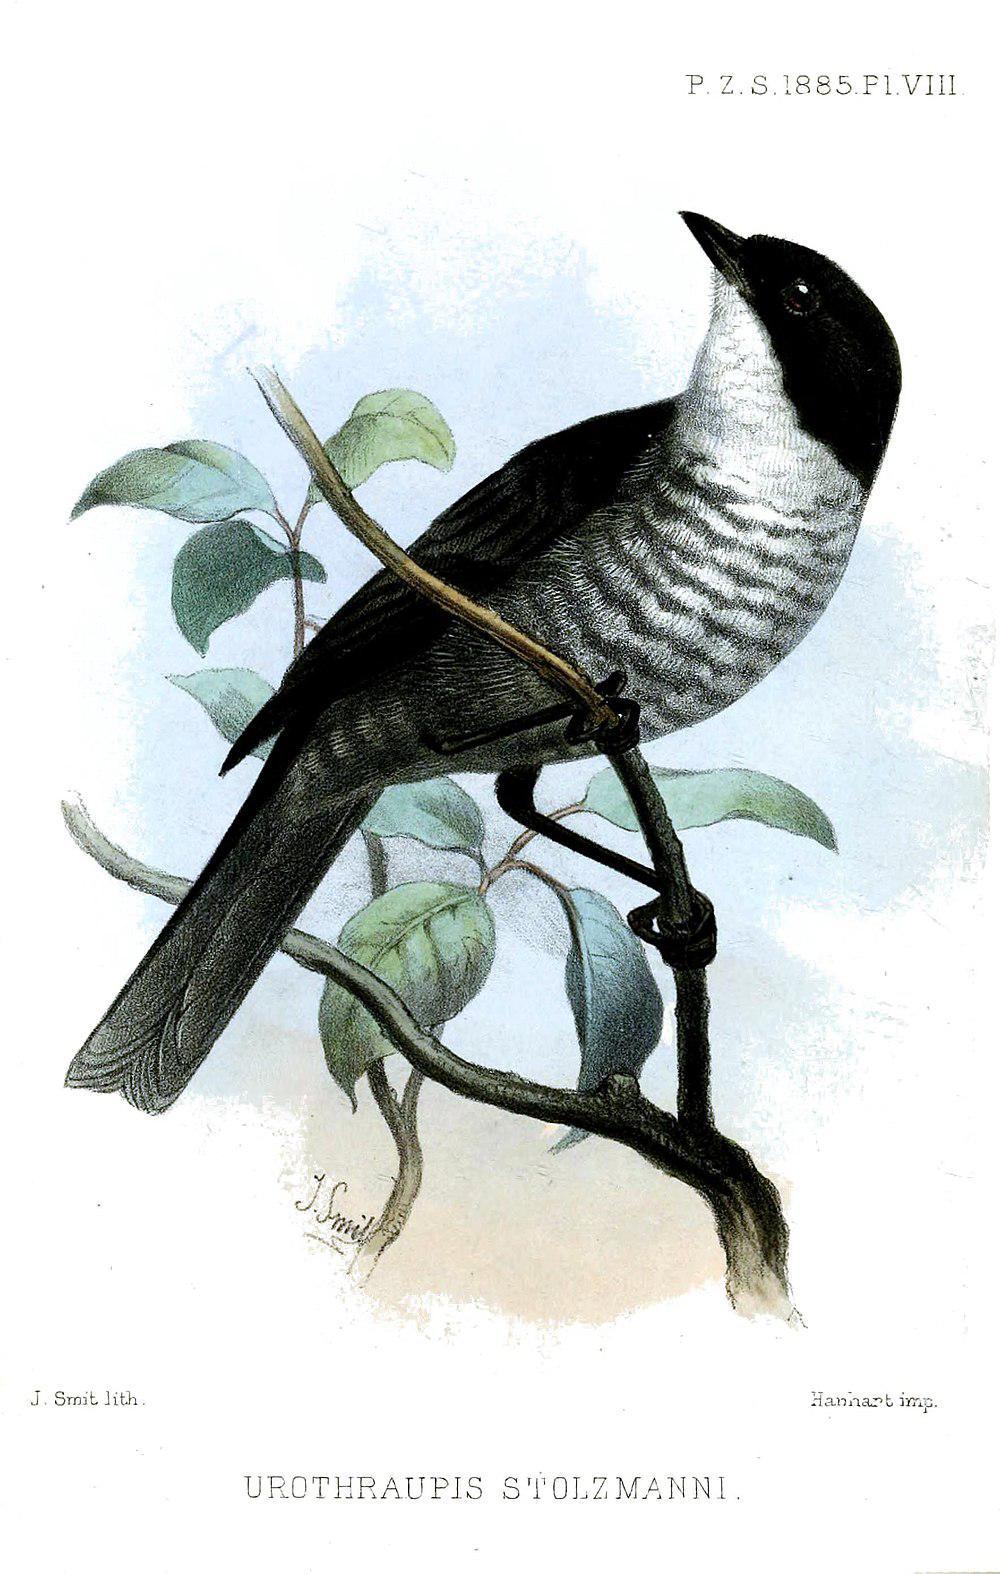 黑背丛雀 / Black-backed Bush Tanager / Urothraupis stolzmanni